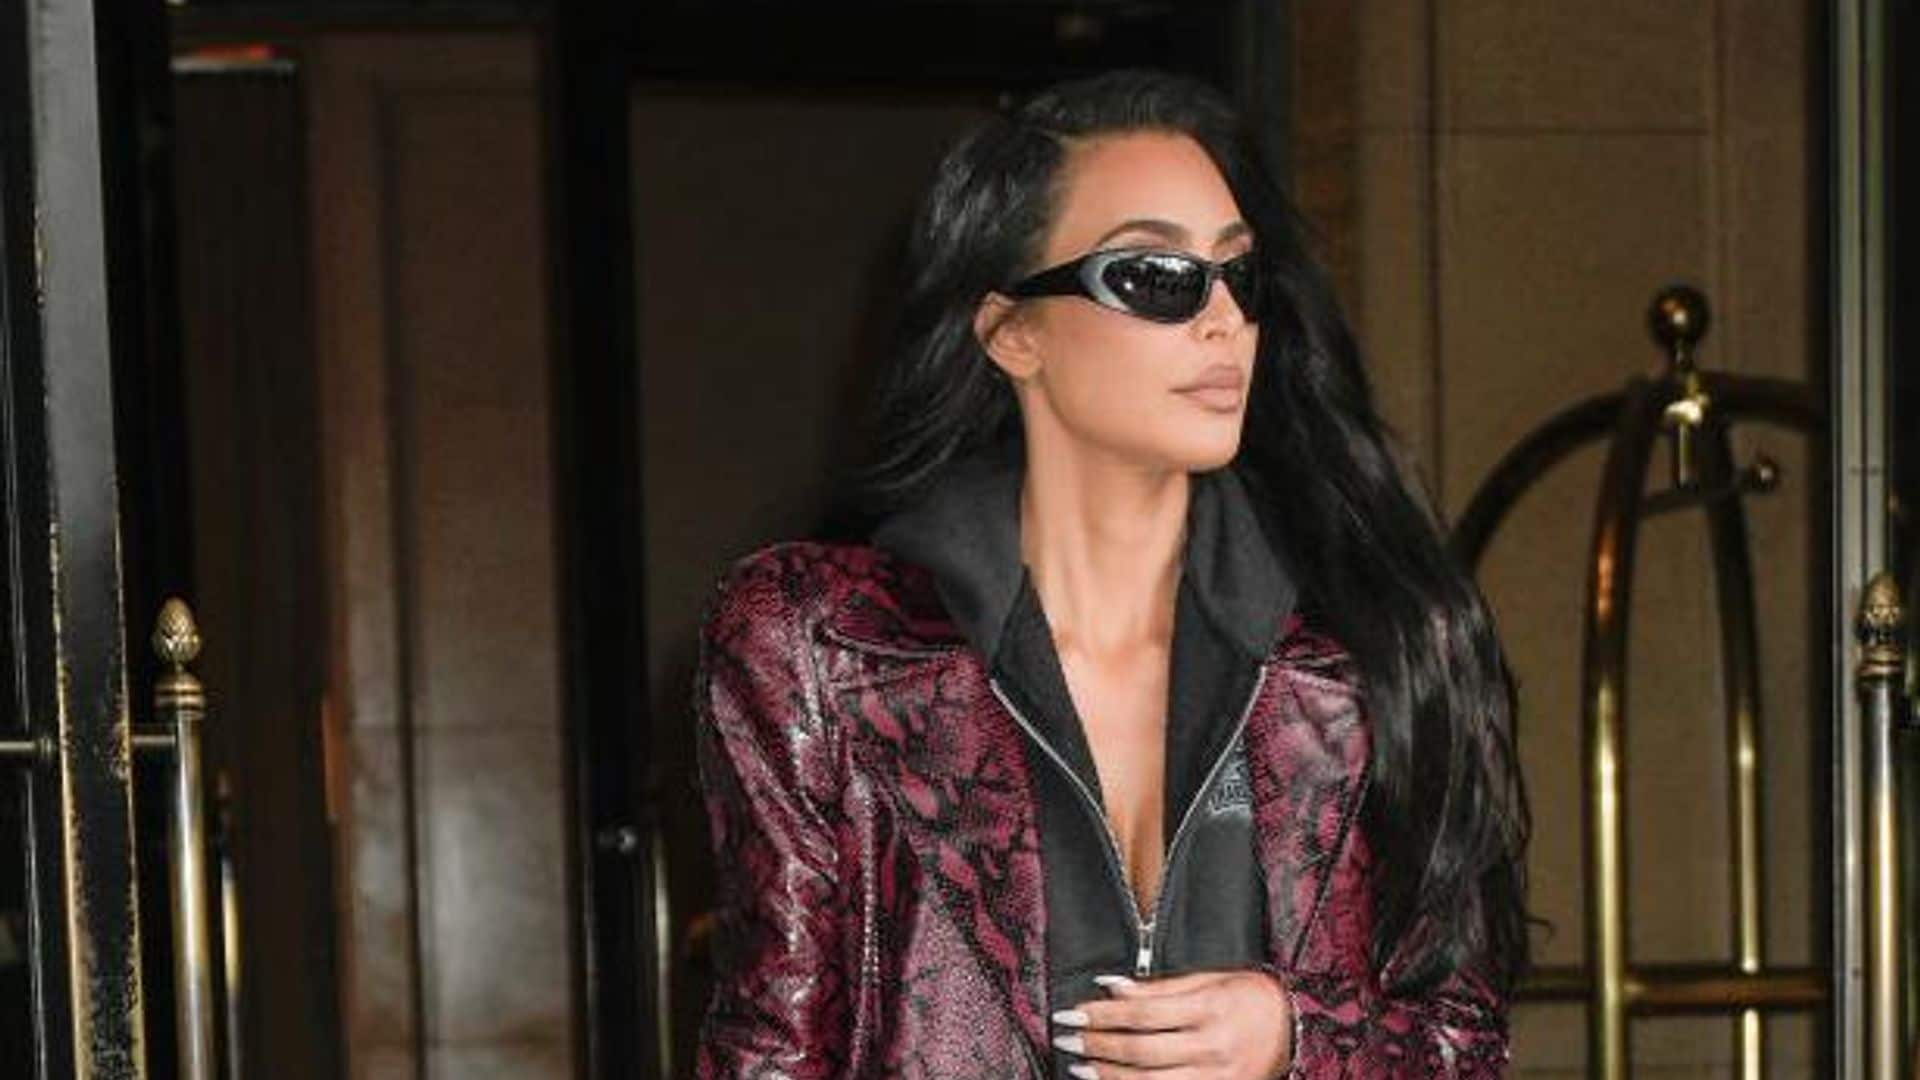 Diez prendas imprescindibles para el otoño, al estilo de Kim Kardashian